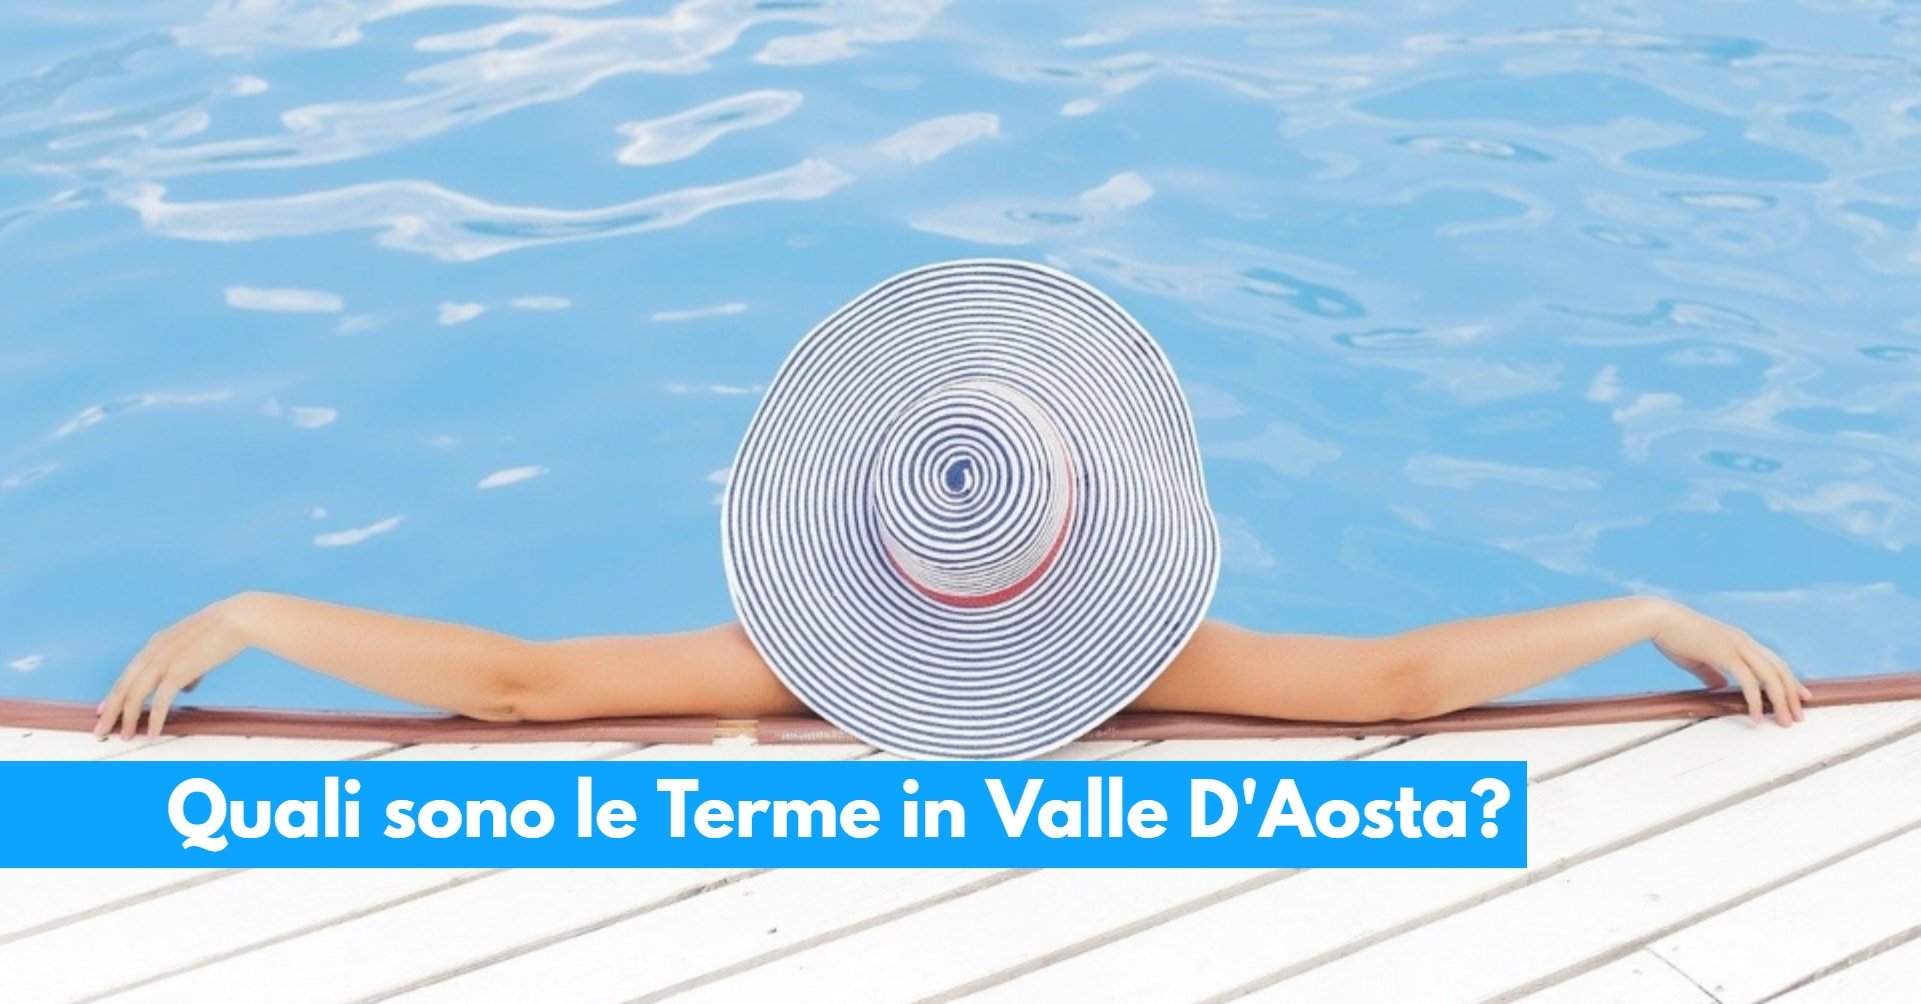 Quali sono le Terme in Valle D’Aosta_ Ecco l’elenco completo, costi e dettagli